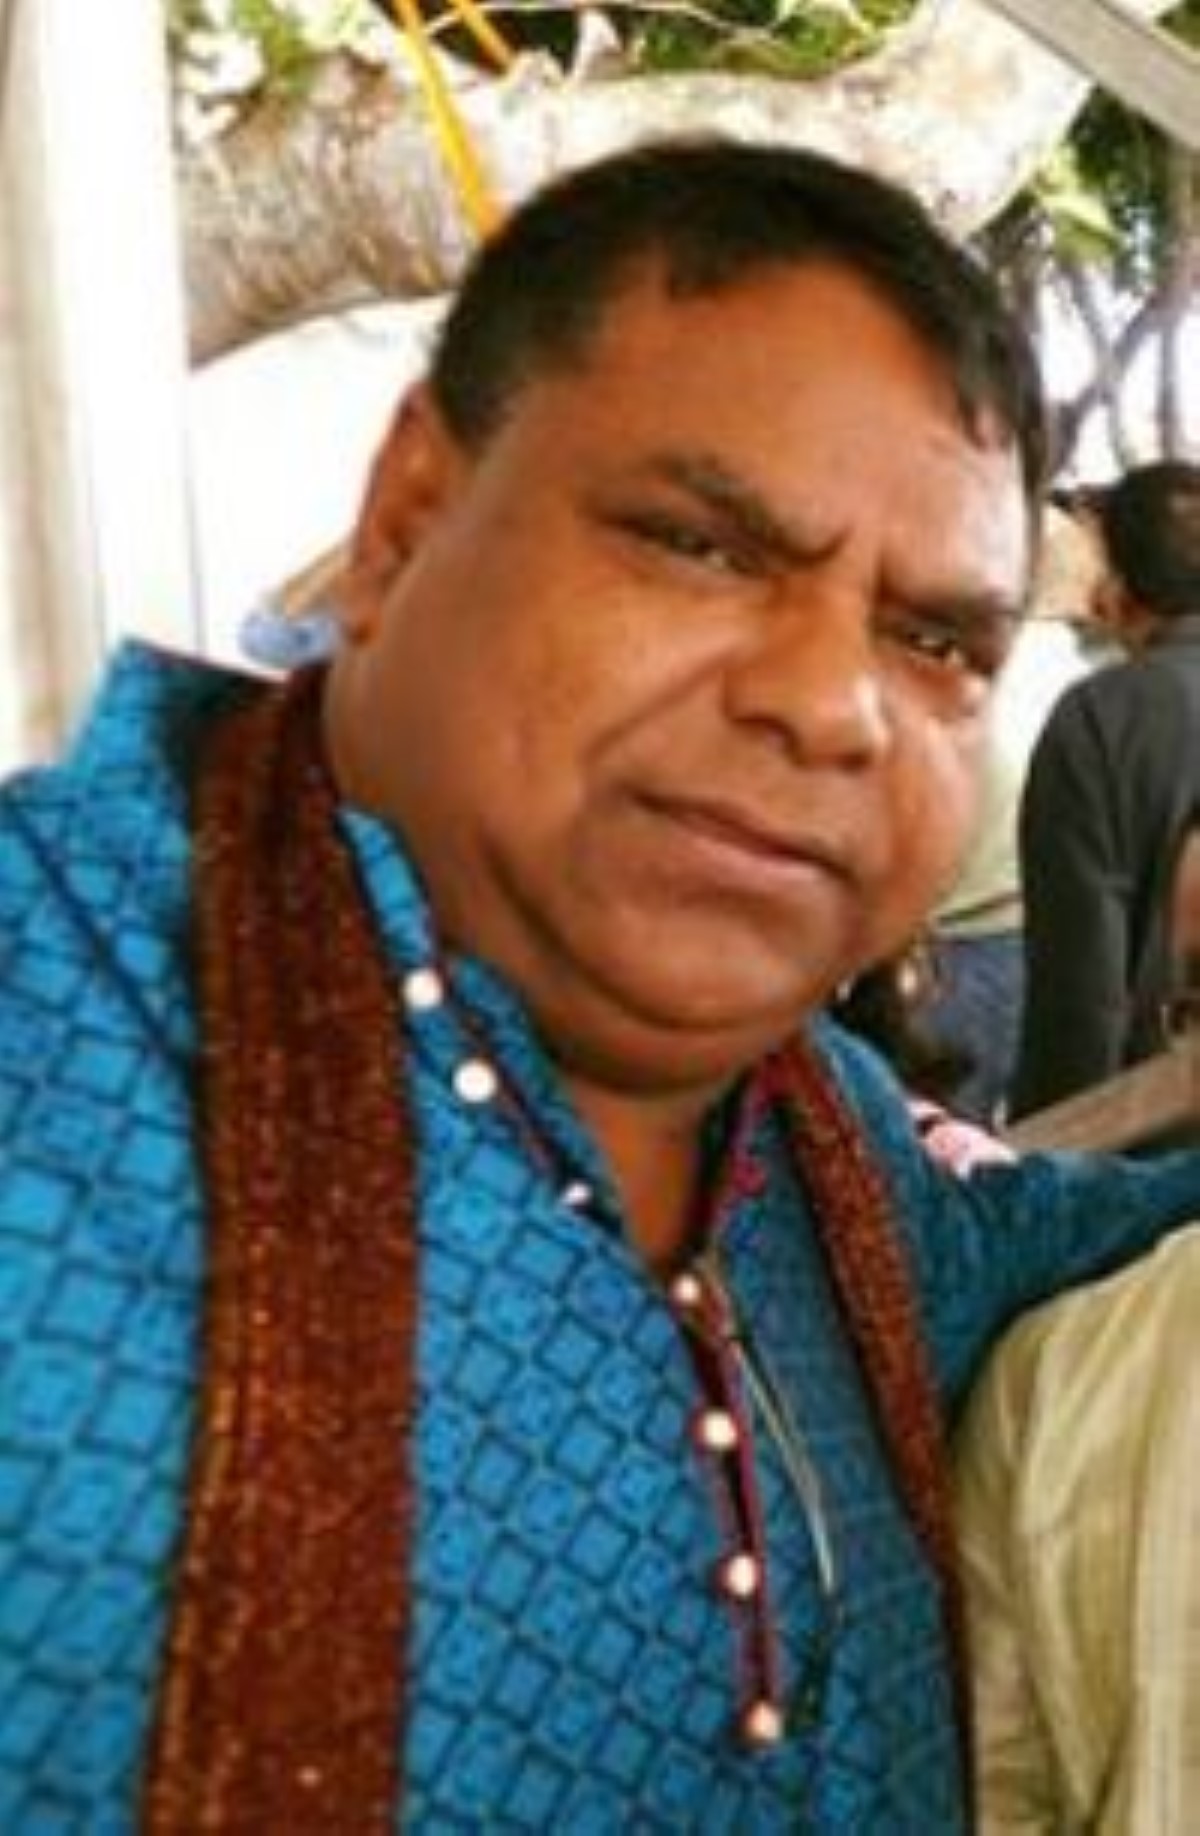 Kishore Taucoory des Bhojpuri Boys allégue que sa fille décédée a été victime de harcèlement